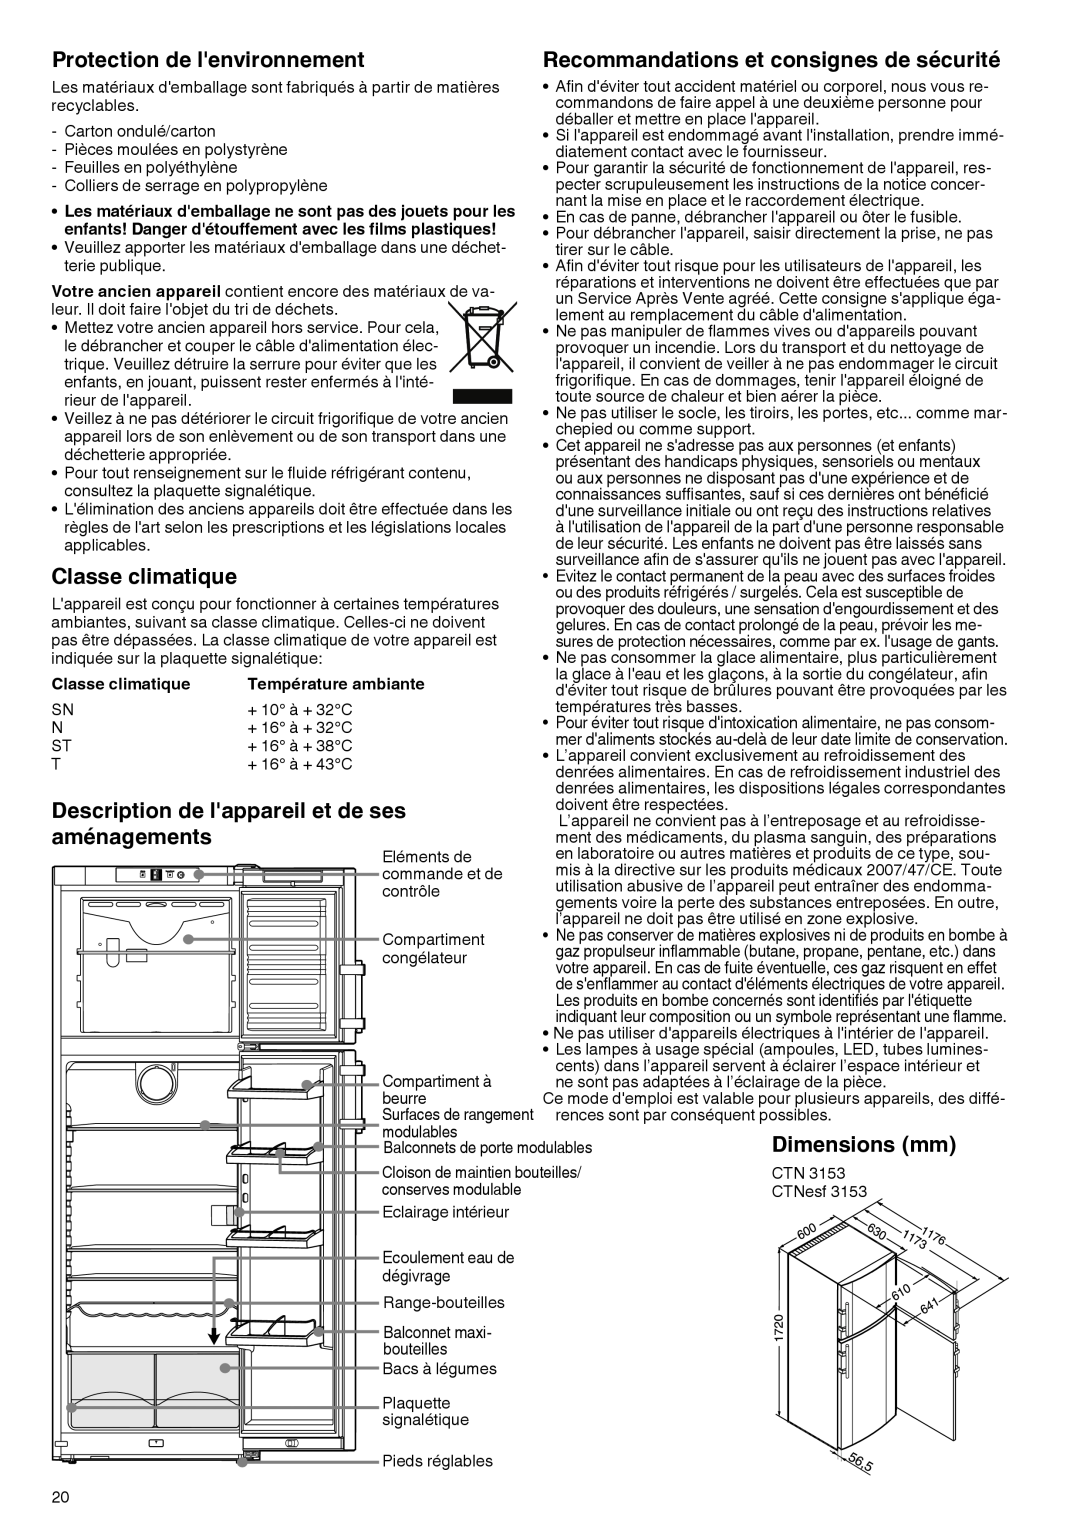 Liebherr 7081 885-01 manual Protection de lenvironnement, Recommandations et consignes de sécurité, Classe climatique 